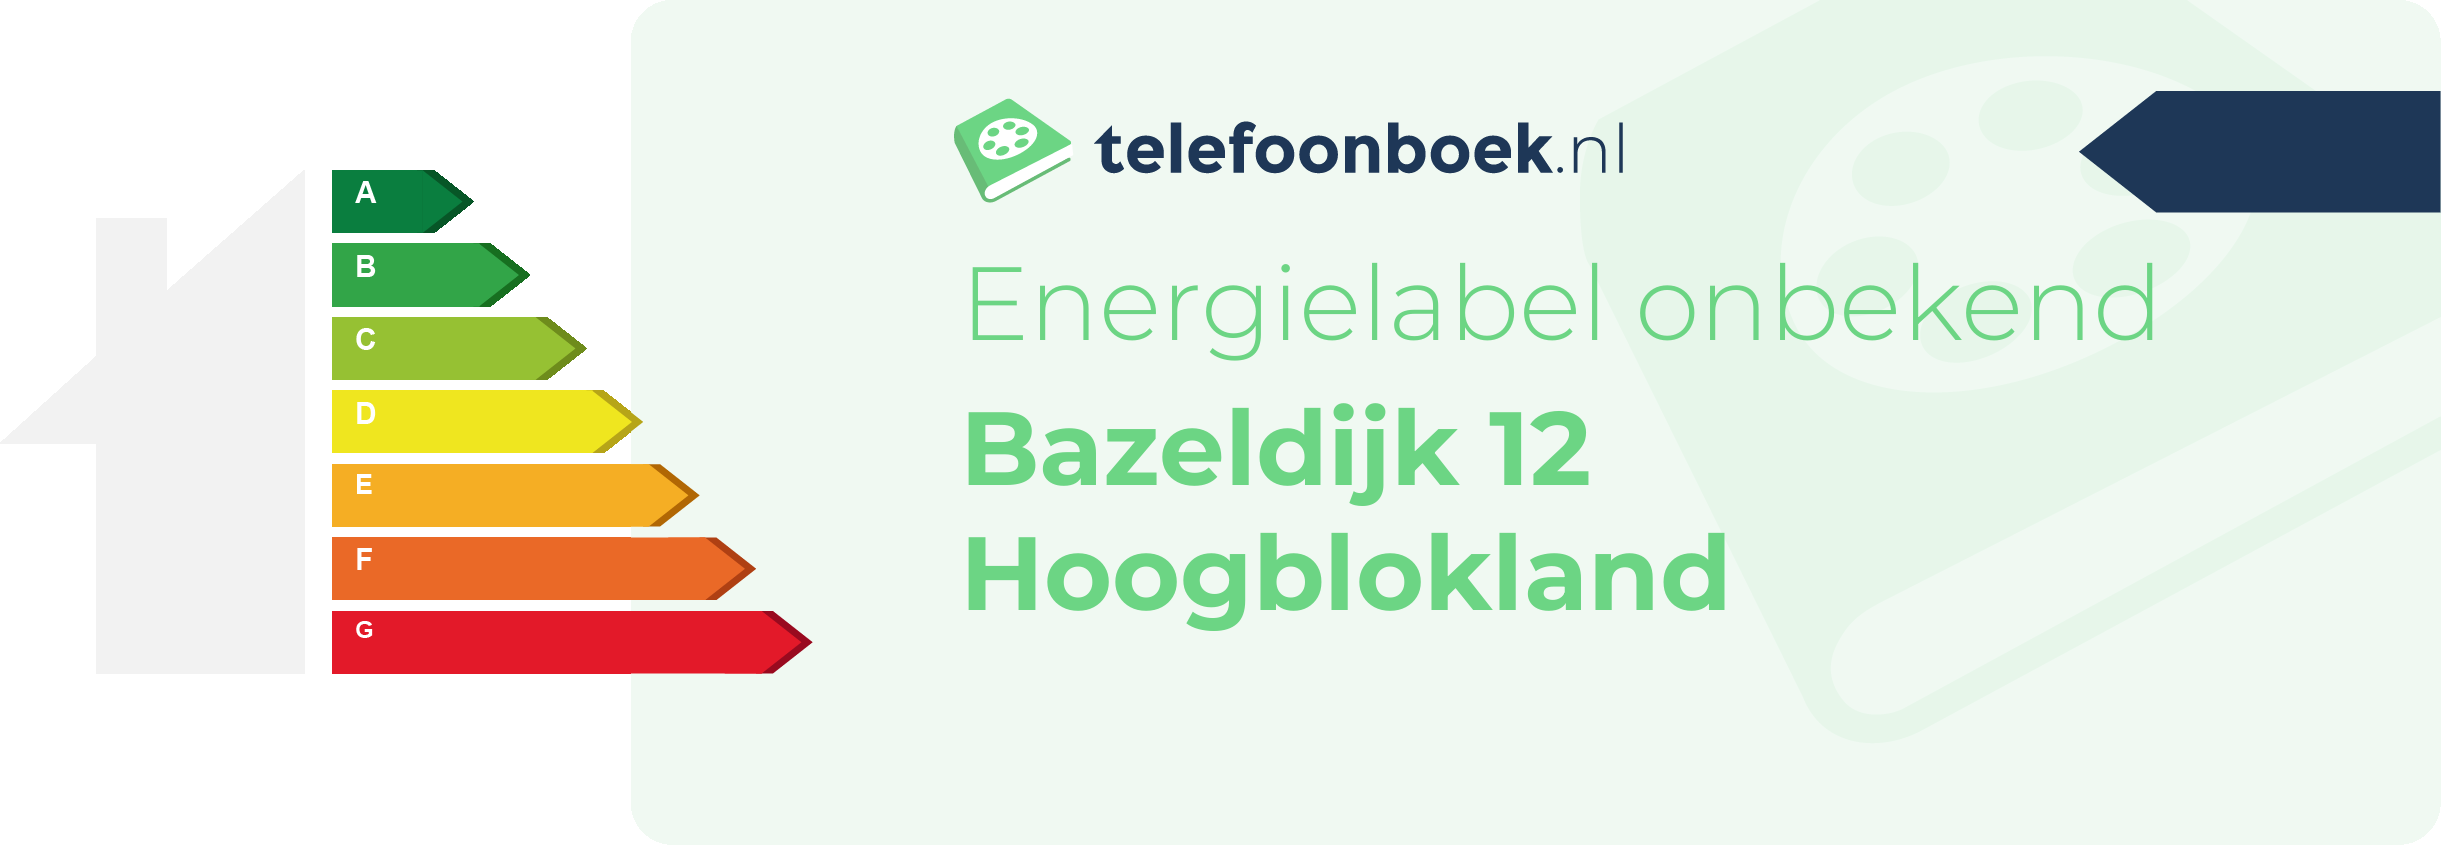 Energielabel Bazeldijk 12 Hoogblokland